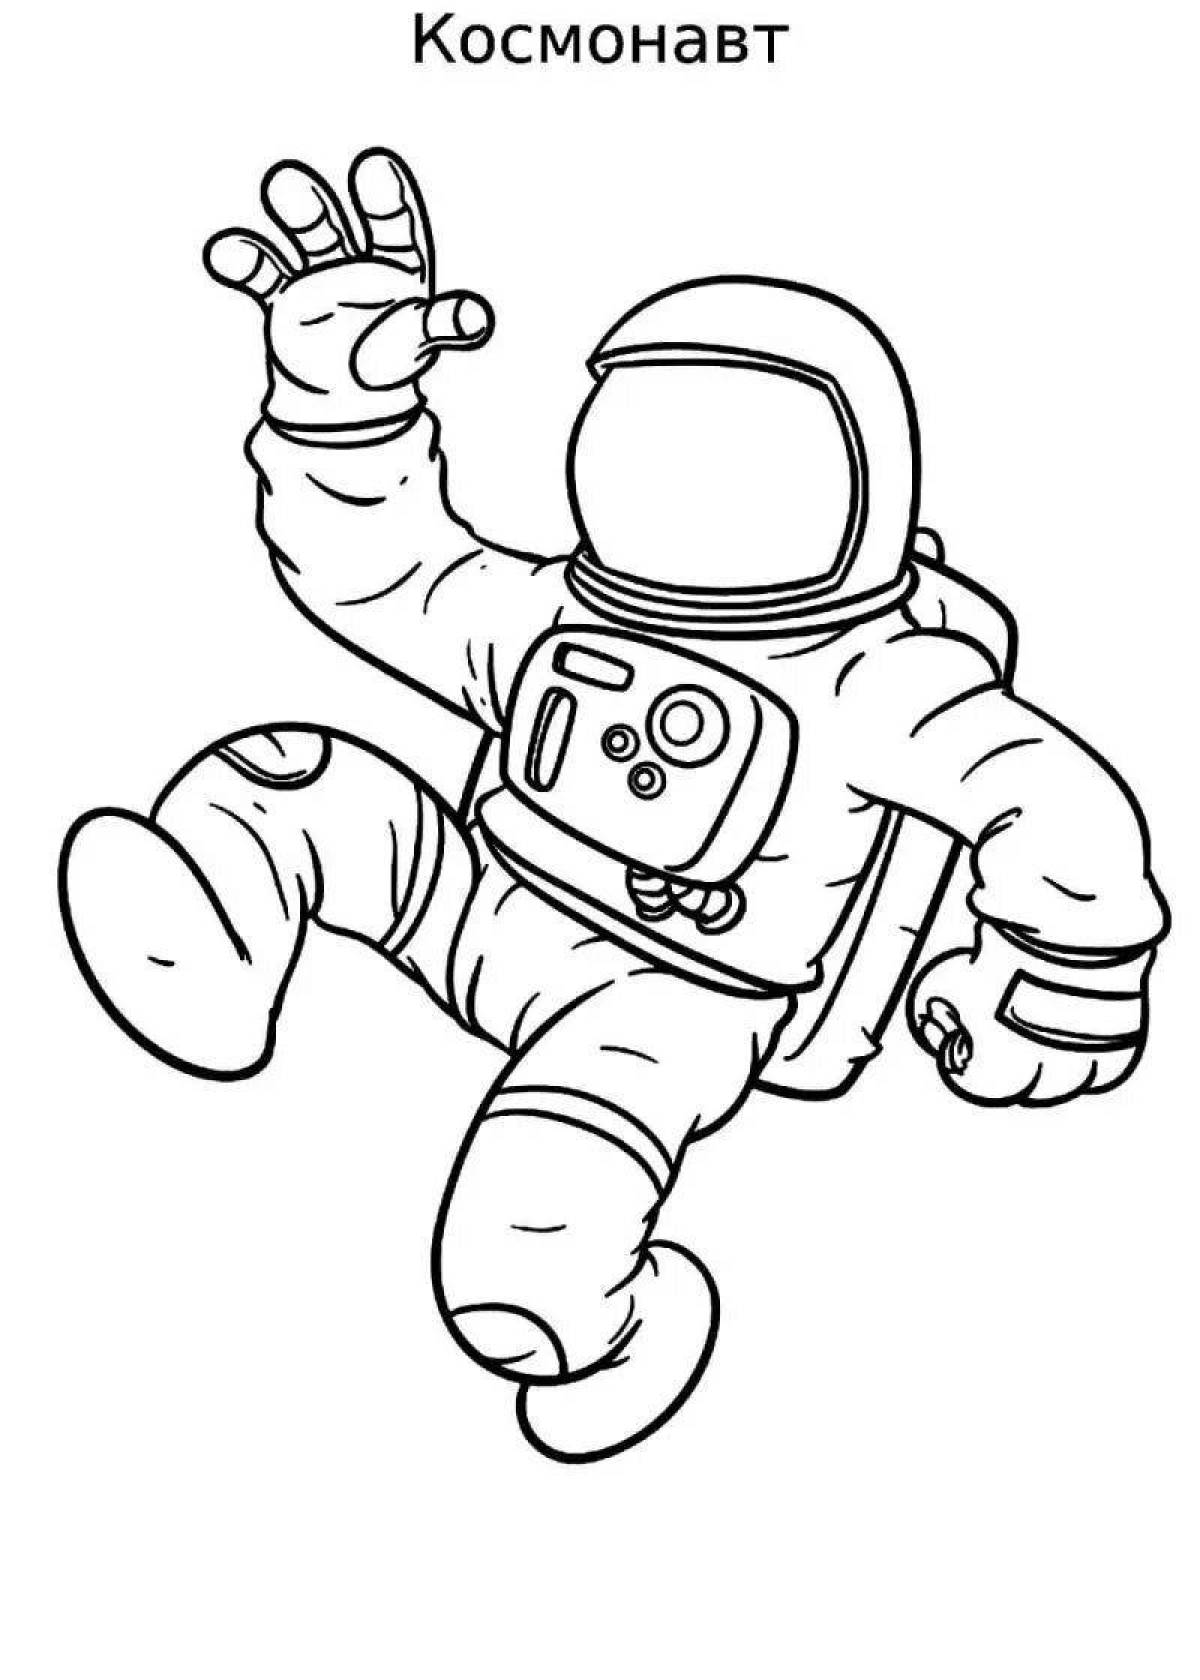 Скафандр рисунок для детей. Раскраска космонавт в скафандре. Раскраска Космонавта в скафандре для детей. Космонавт раскраска для детей. Космонавт рисунок для детей.